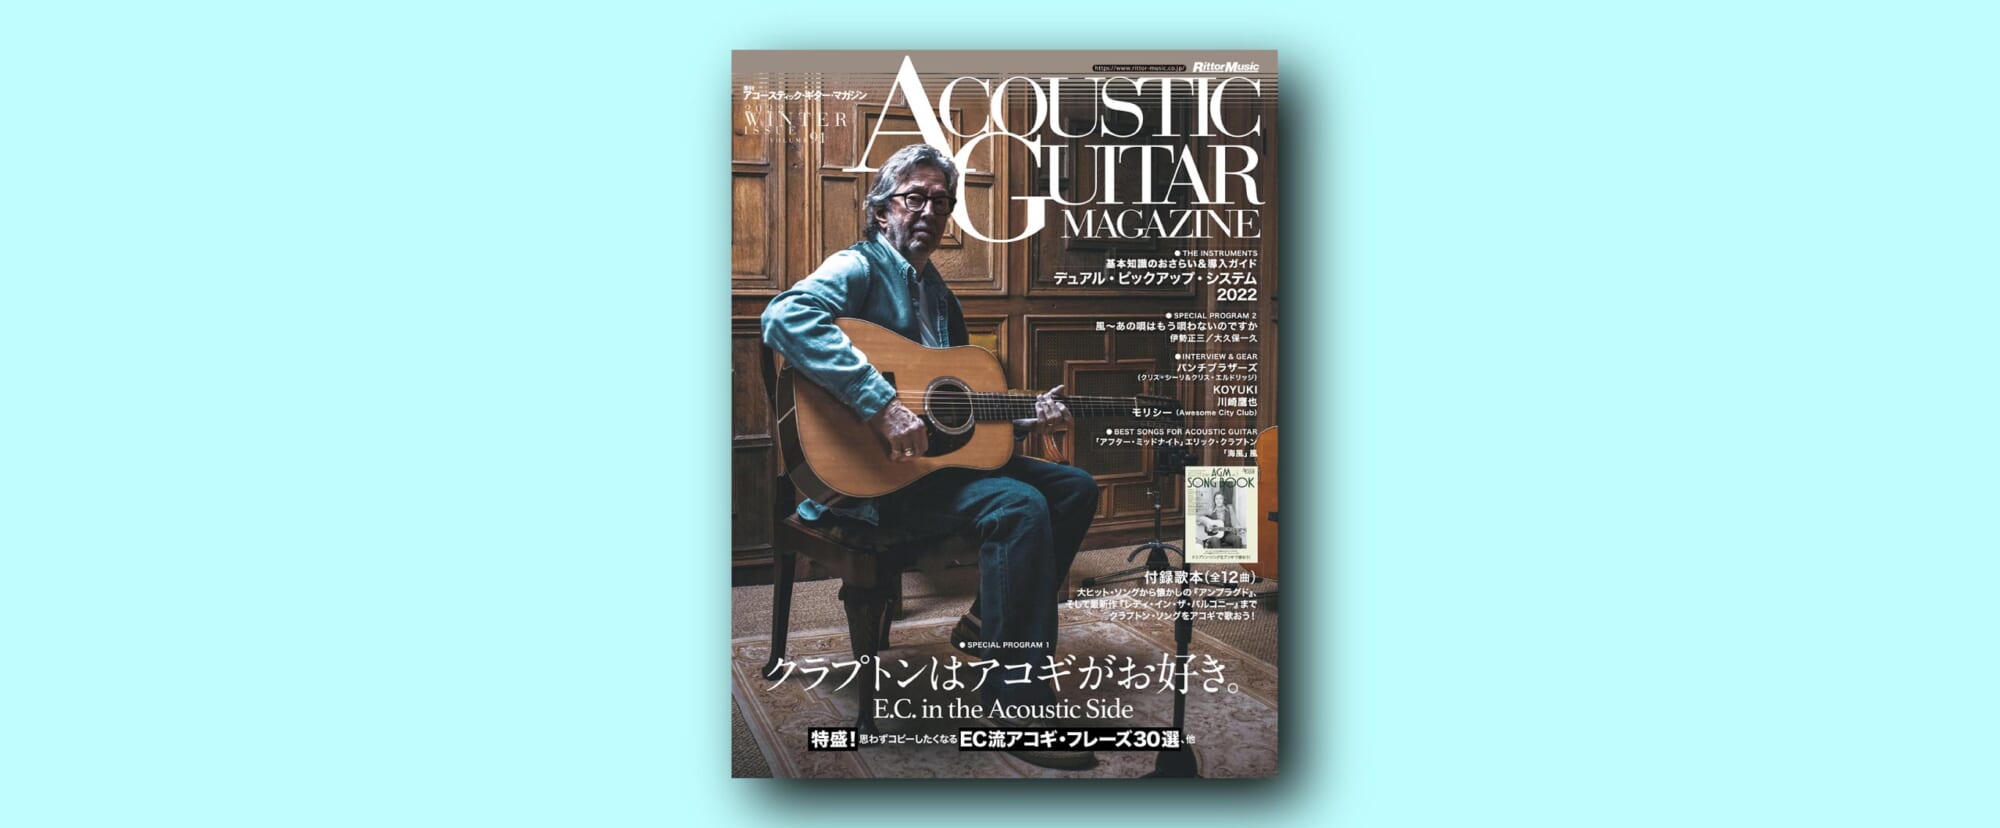 アコースティック・ギター・マガジン最新号巻頭特集は“クラプトンはアコギがお好き。”